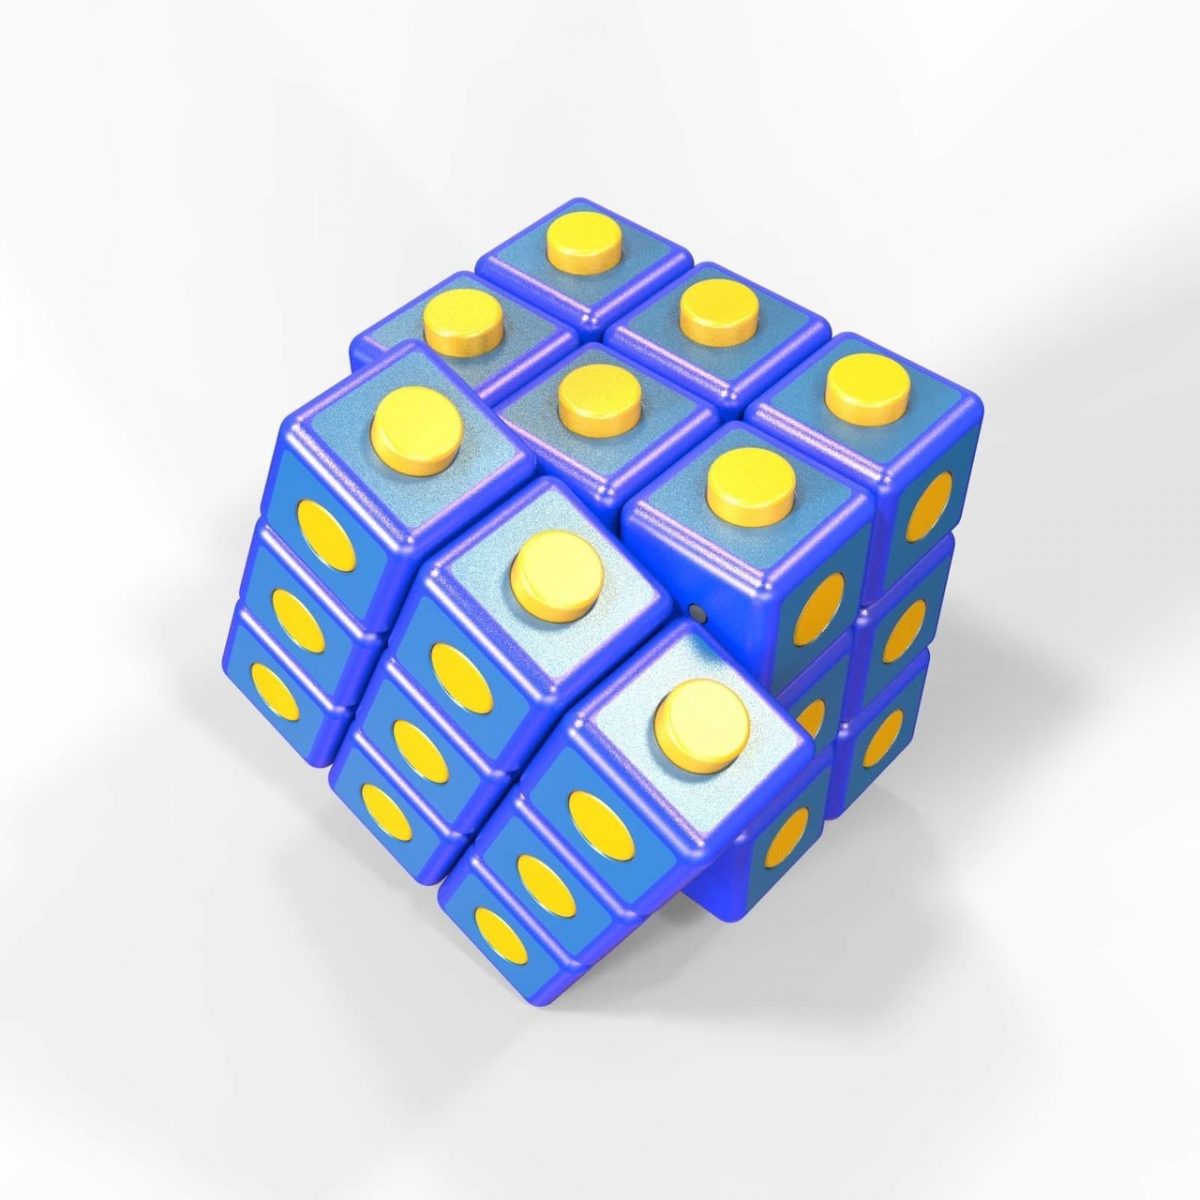 Нижегородец получил патент на кубик Рубика с выдвигающимися элементами